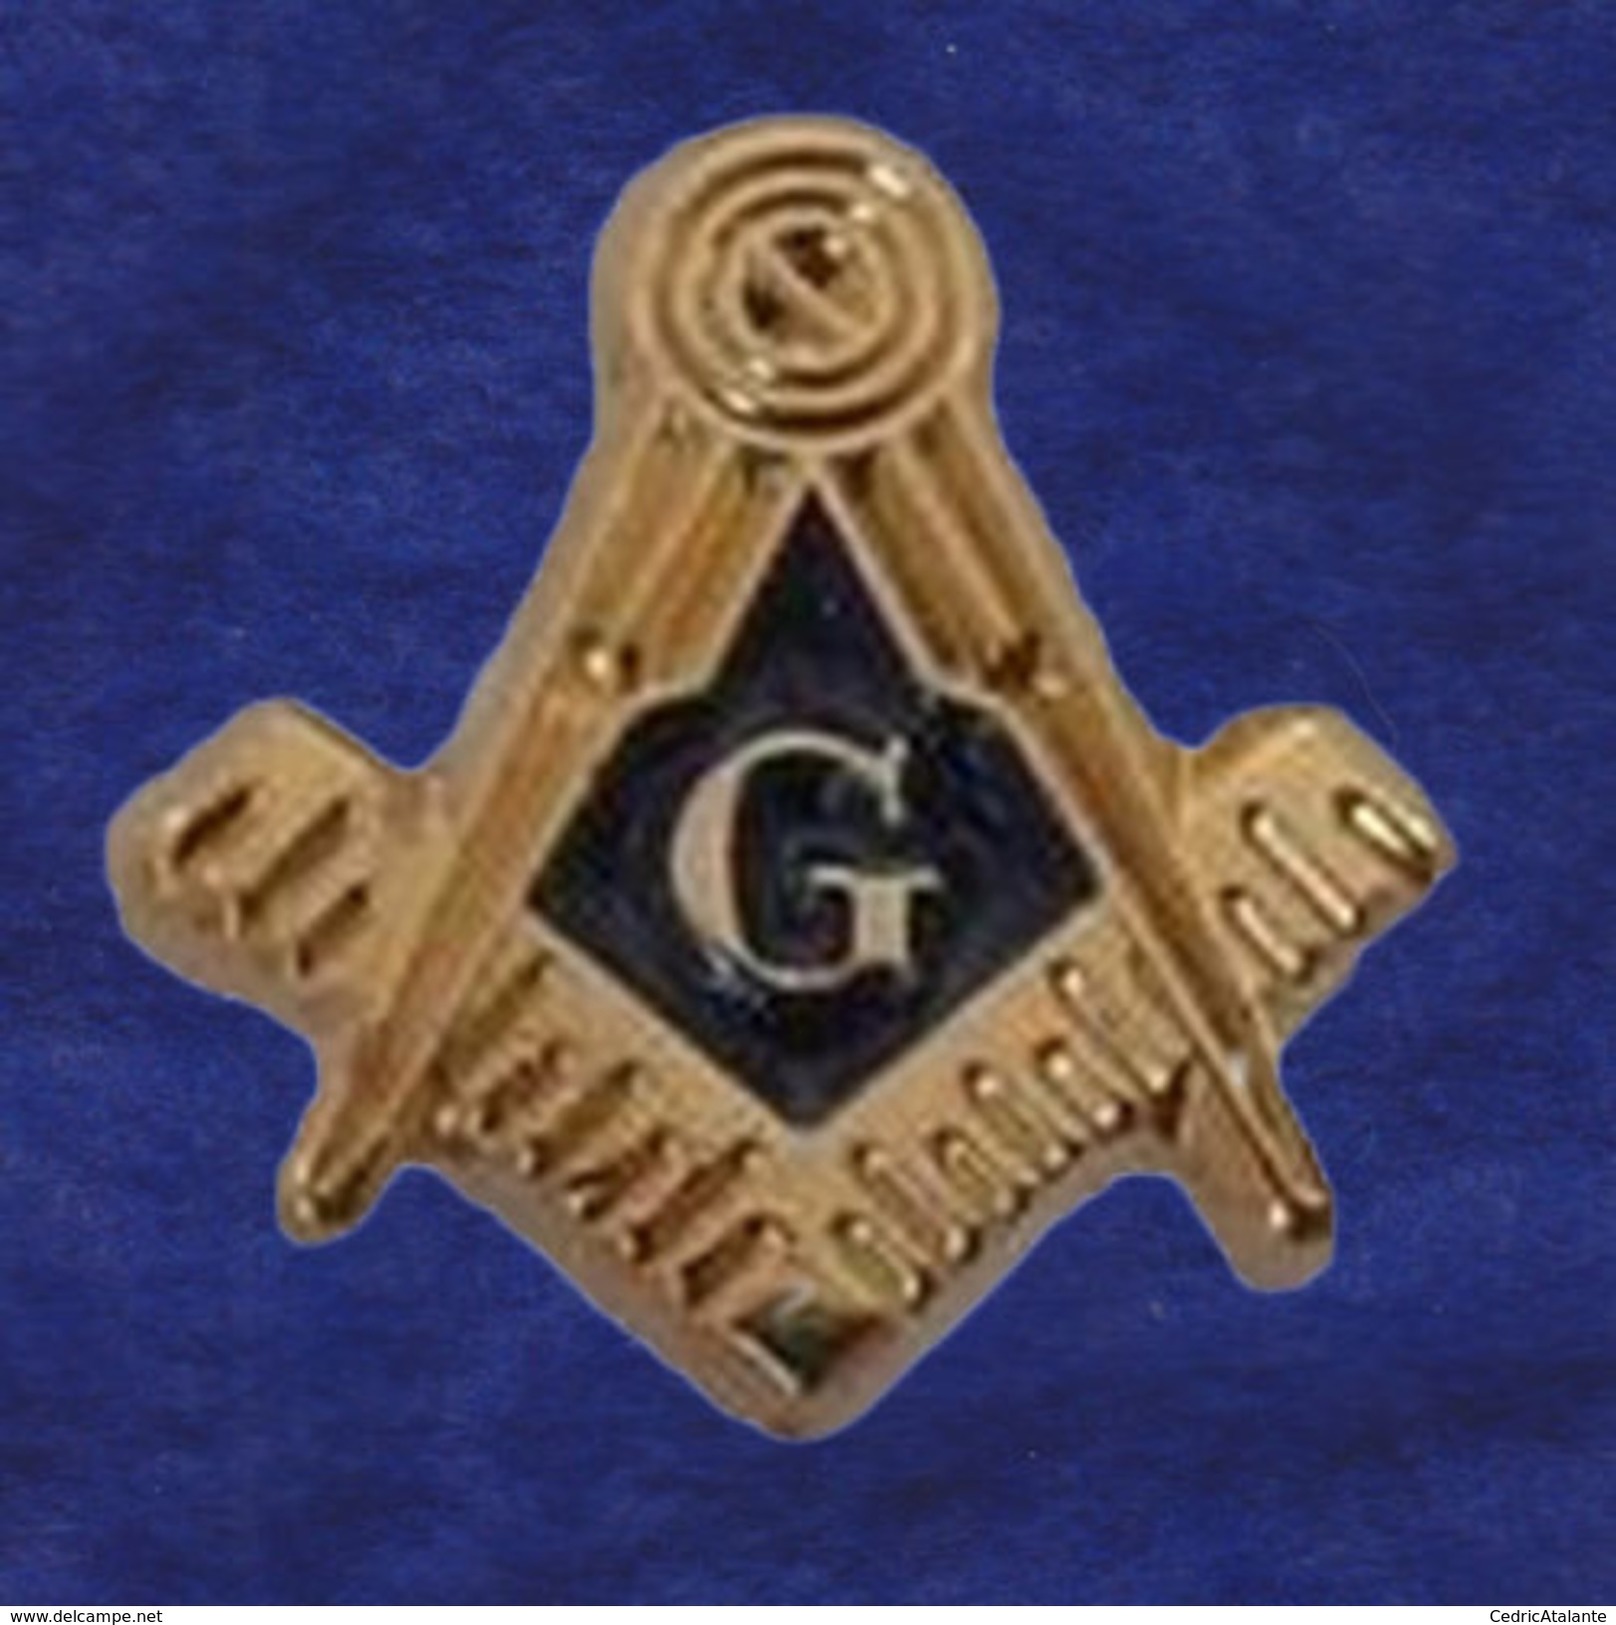 Pin's Maçonnique - Symboles Equerre Sur Compas Et Lettre G 10 Mm - Franc-Maçonnerie - Freemasonry - Godsdienst & Esoterisme